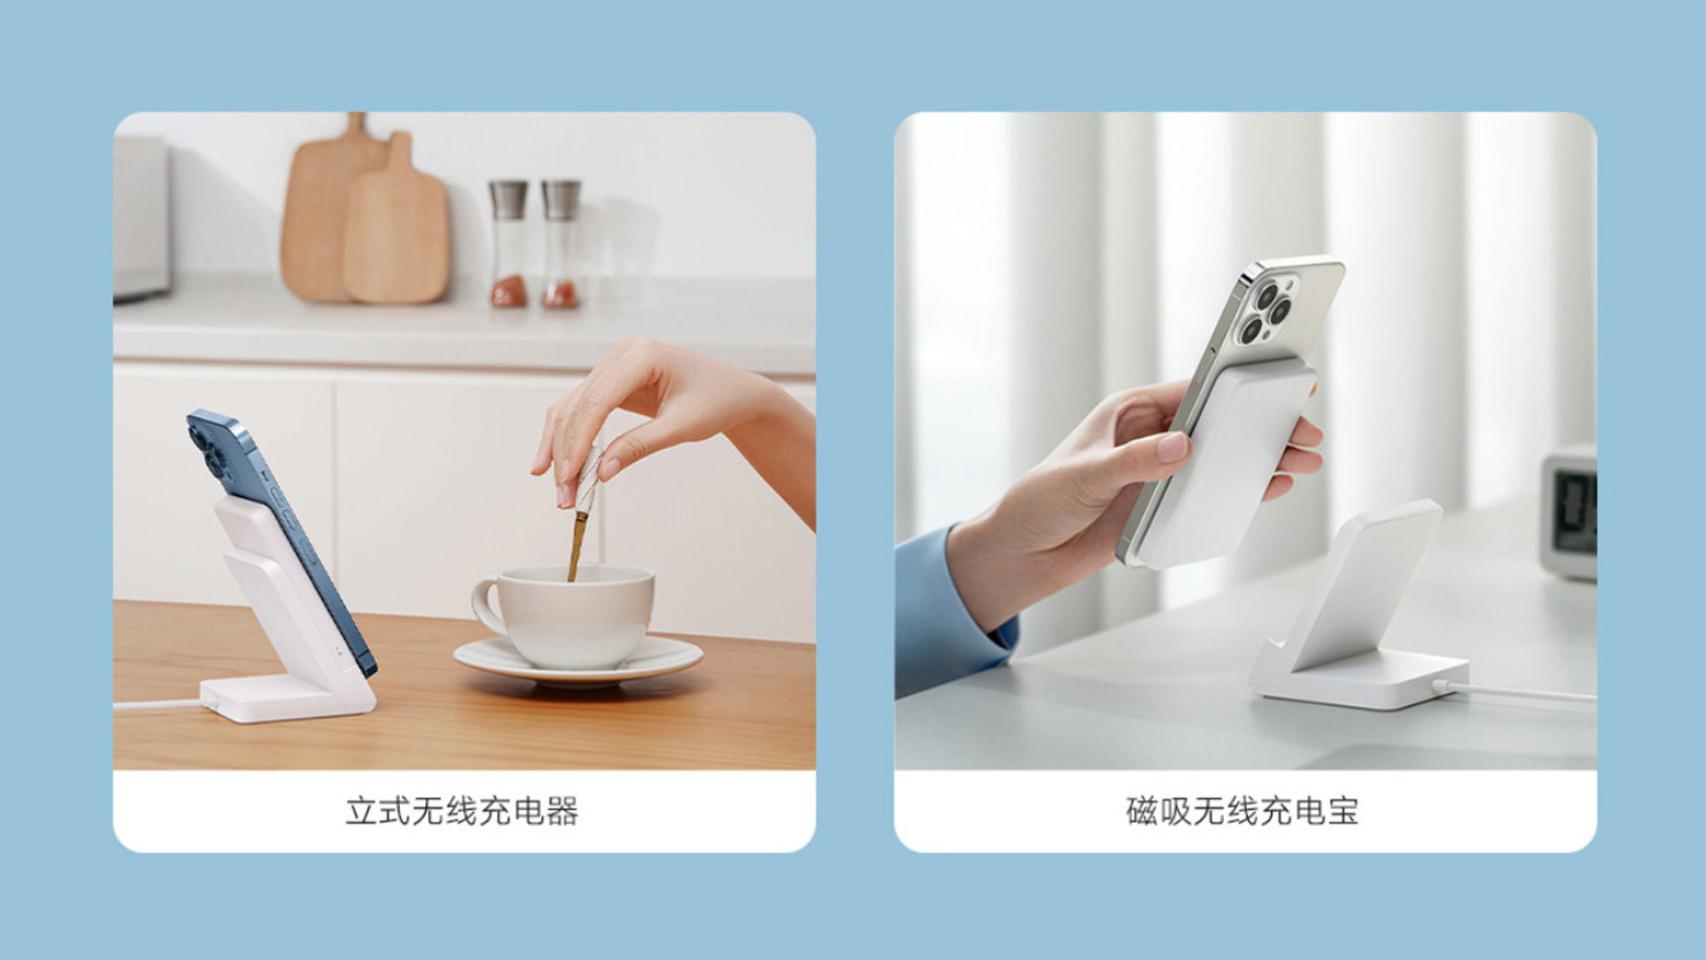 Xiaomi lanza una batería externa MagSafe para los iPhone